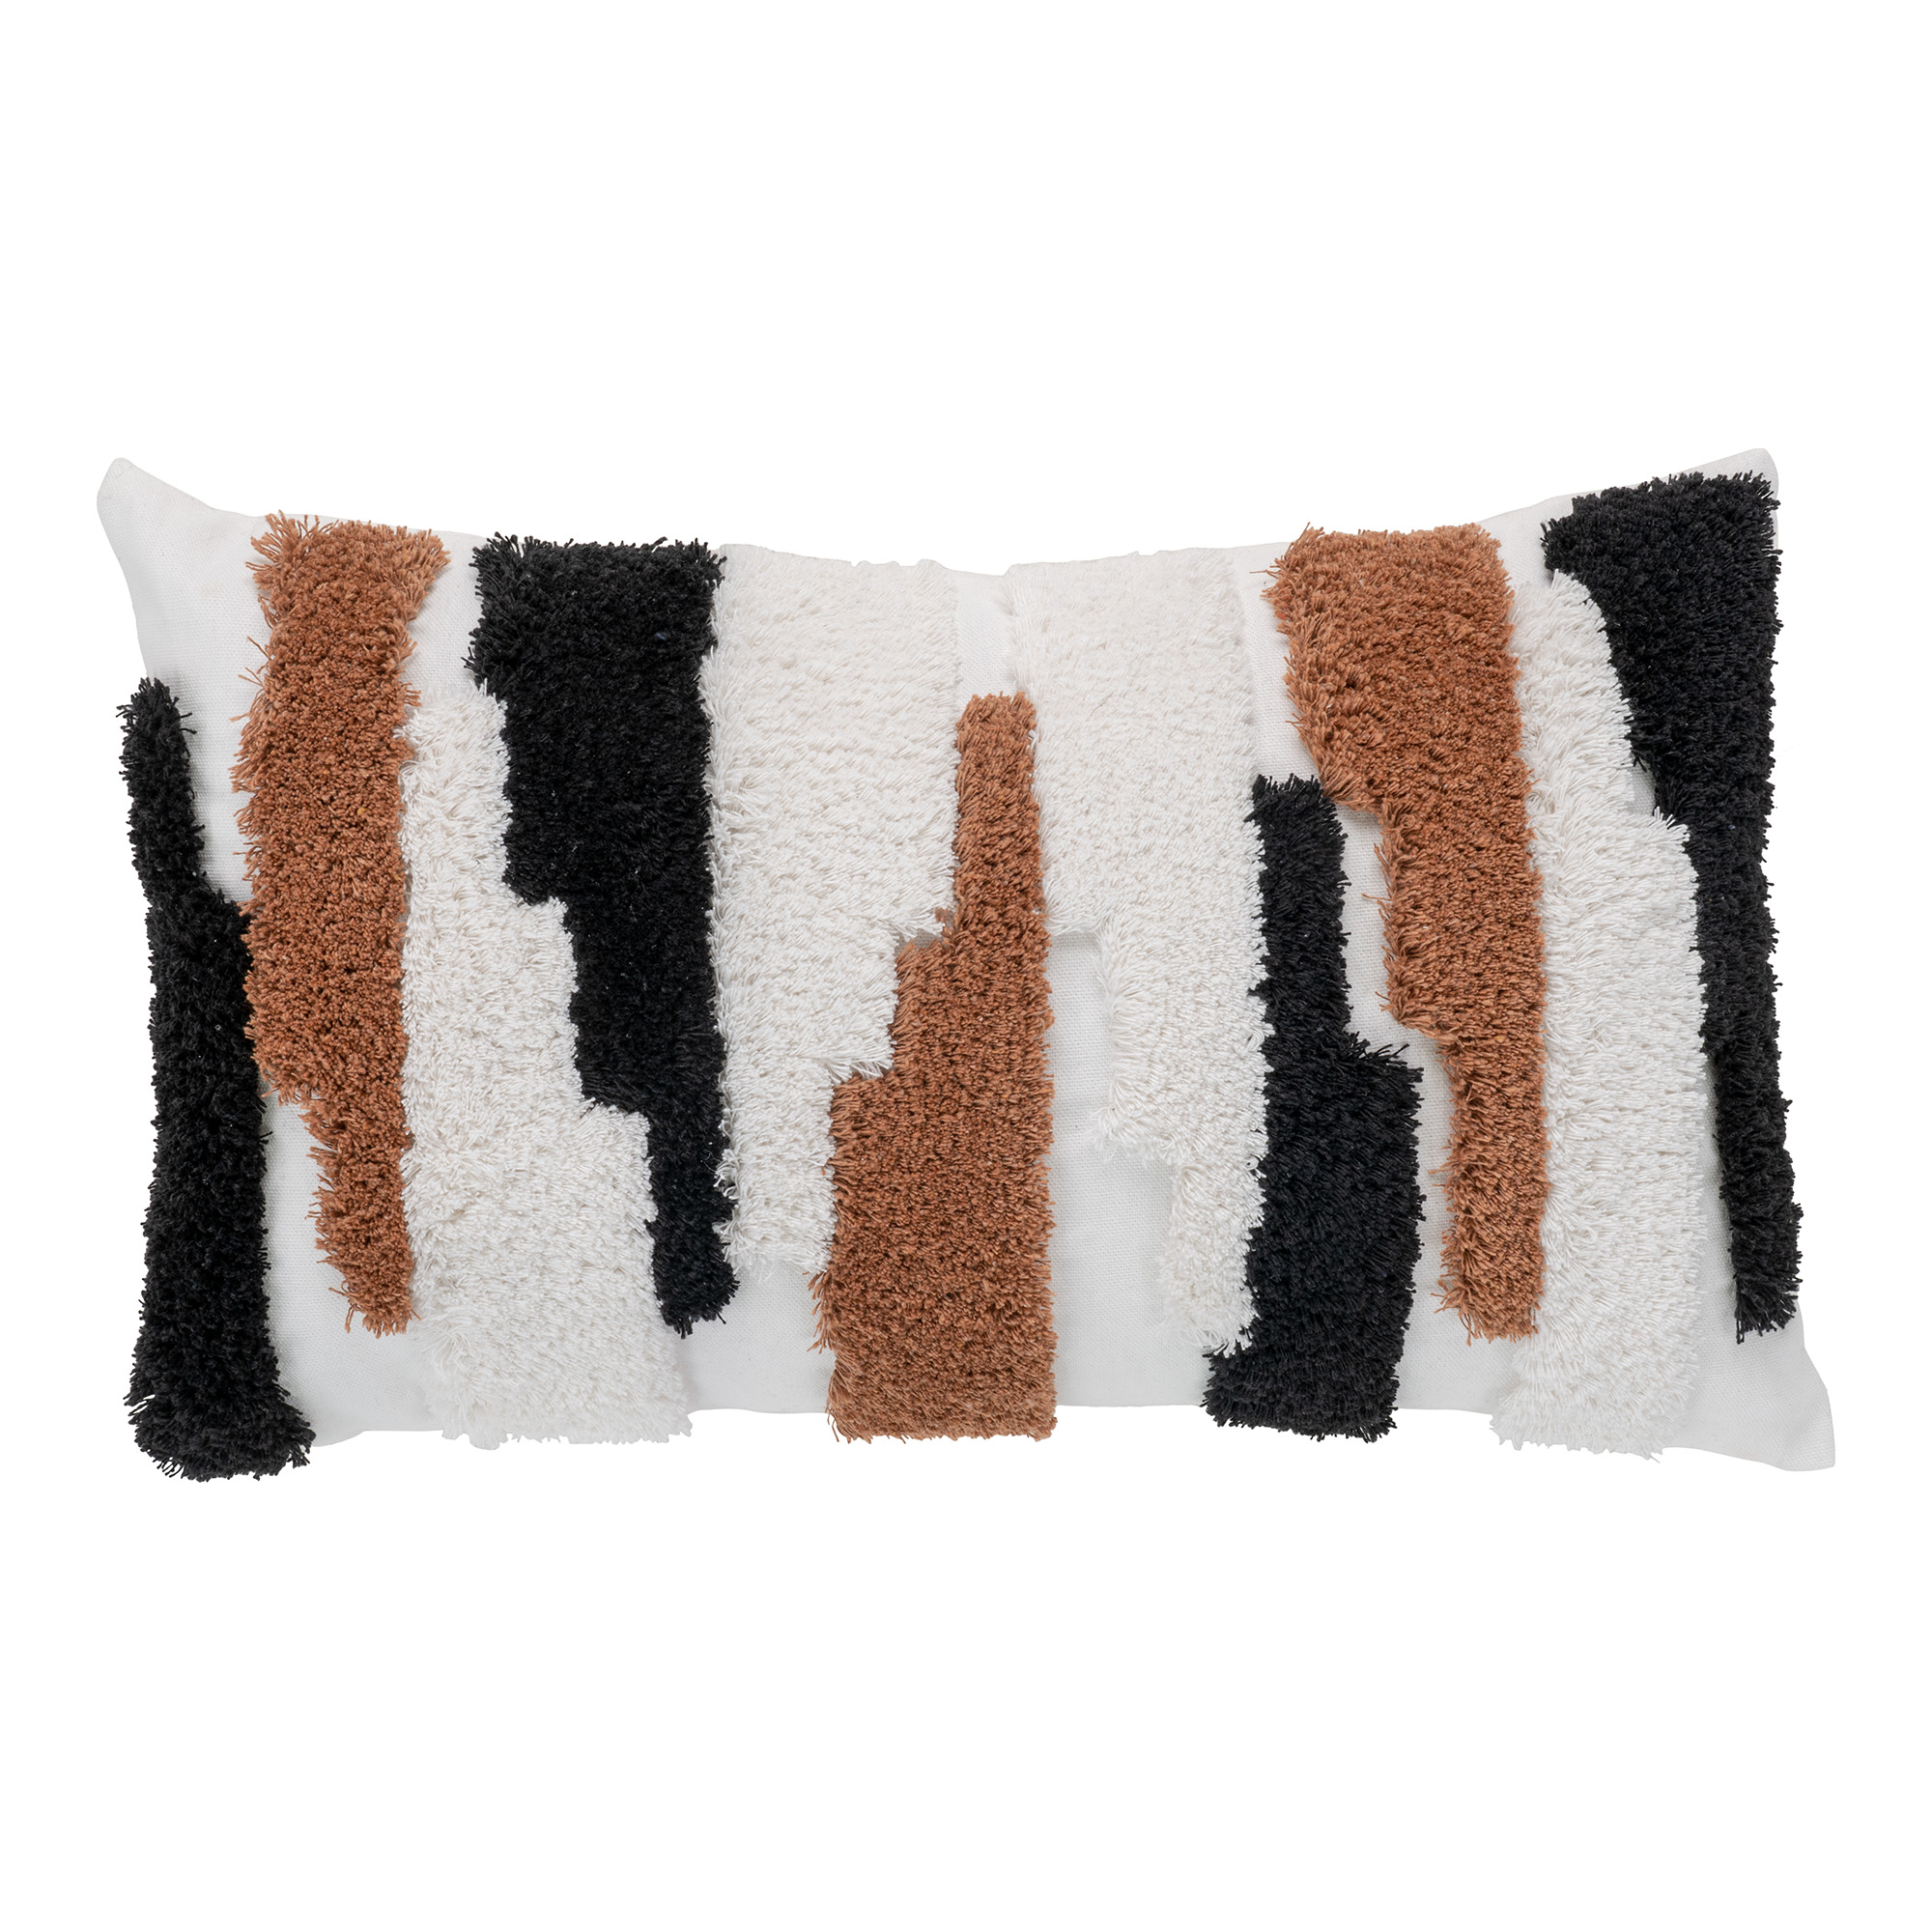 Billede af HOUSE NORDIC Sagres pyntepude, m. mønster, rektangulær - brun/sort/hvid polyester (30x50)